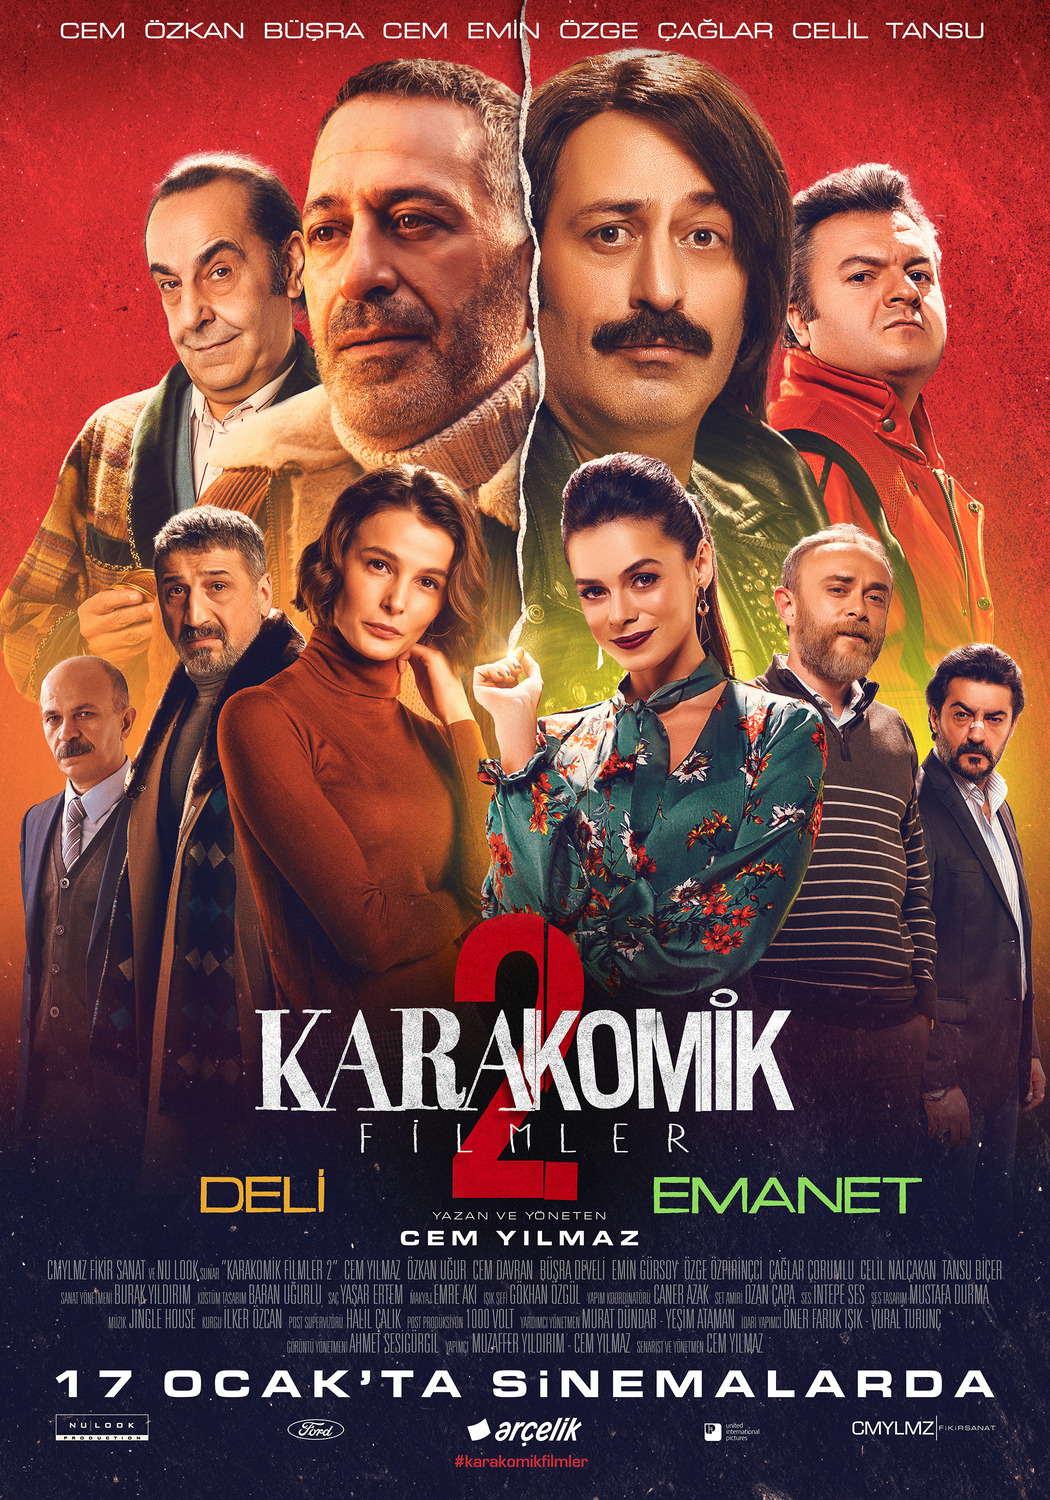 Extra Large Movie Poster Image for Karakomik Filmler: Deli (#6 of 6)